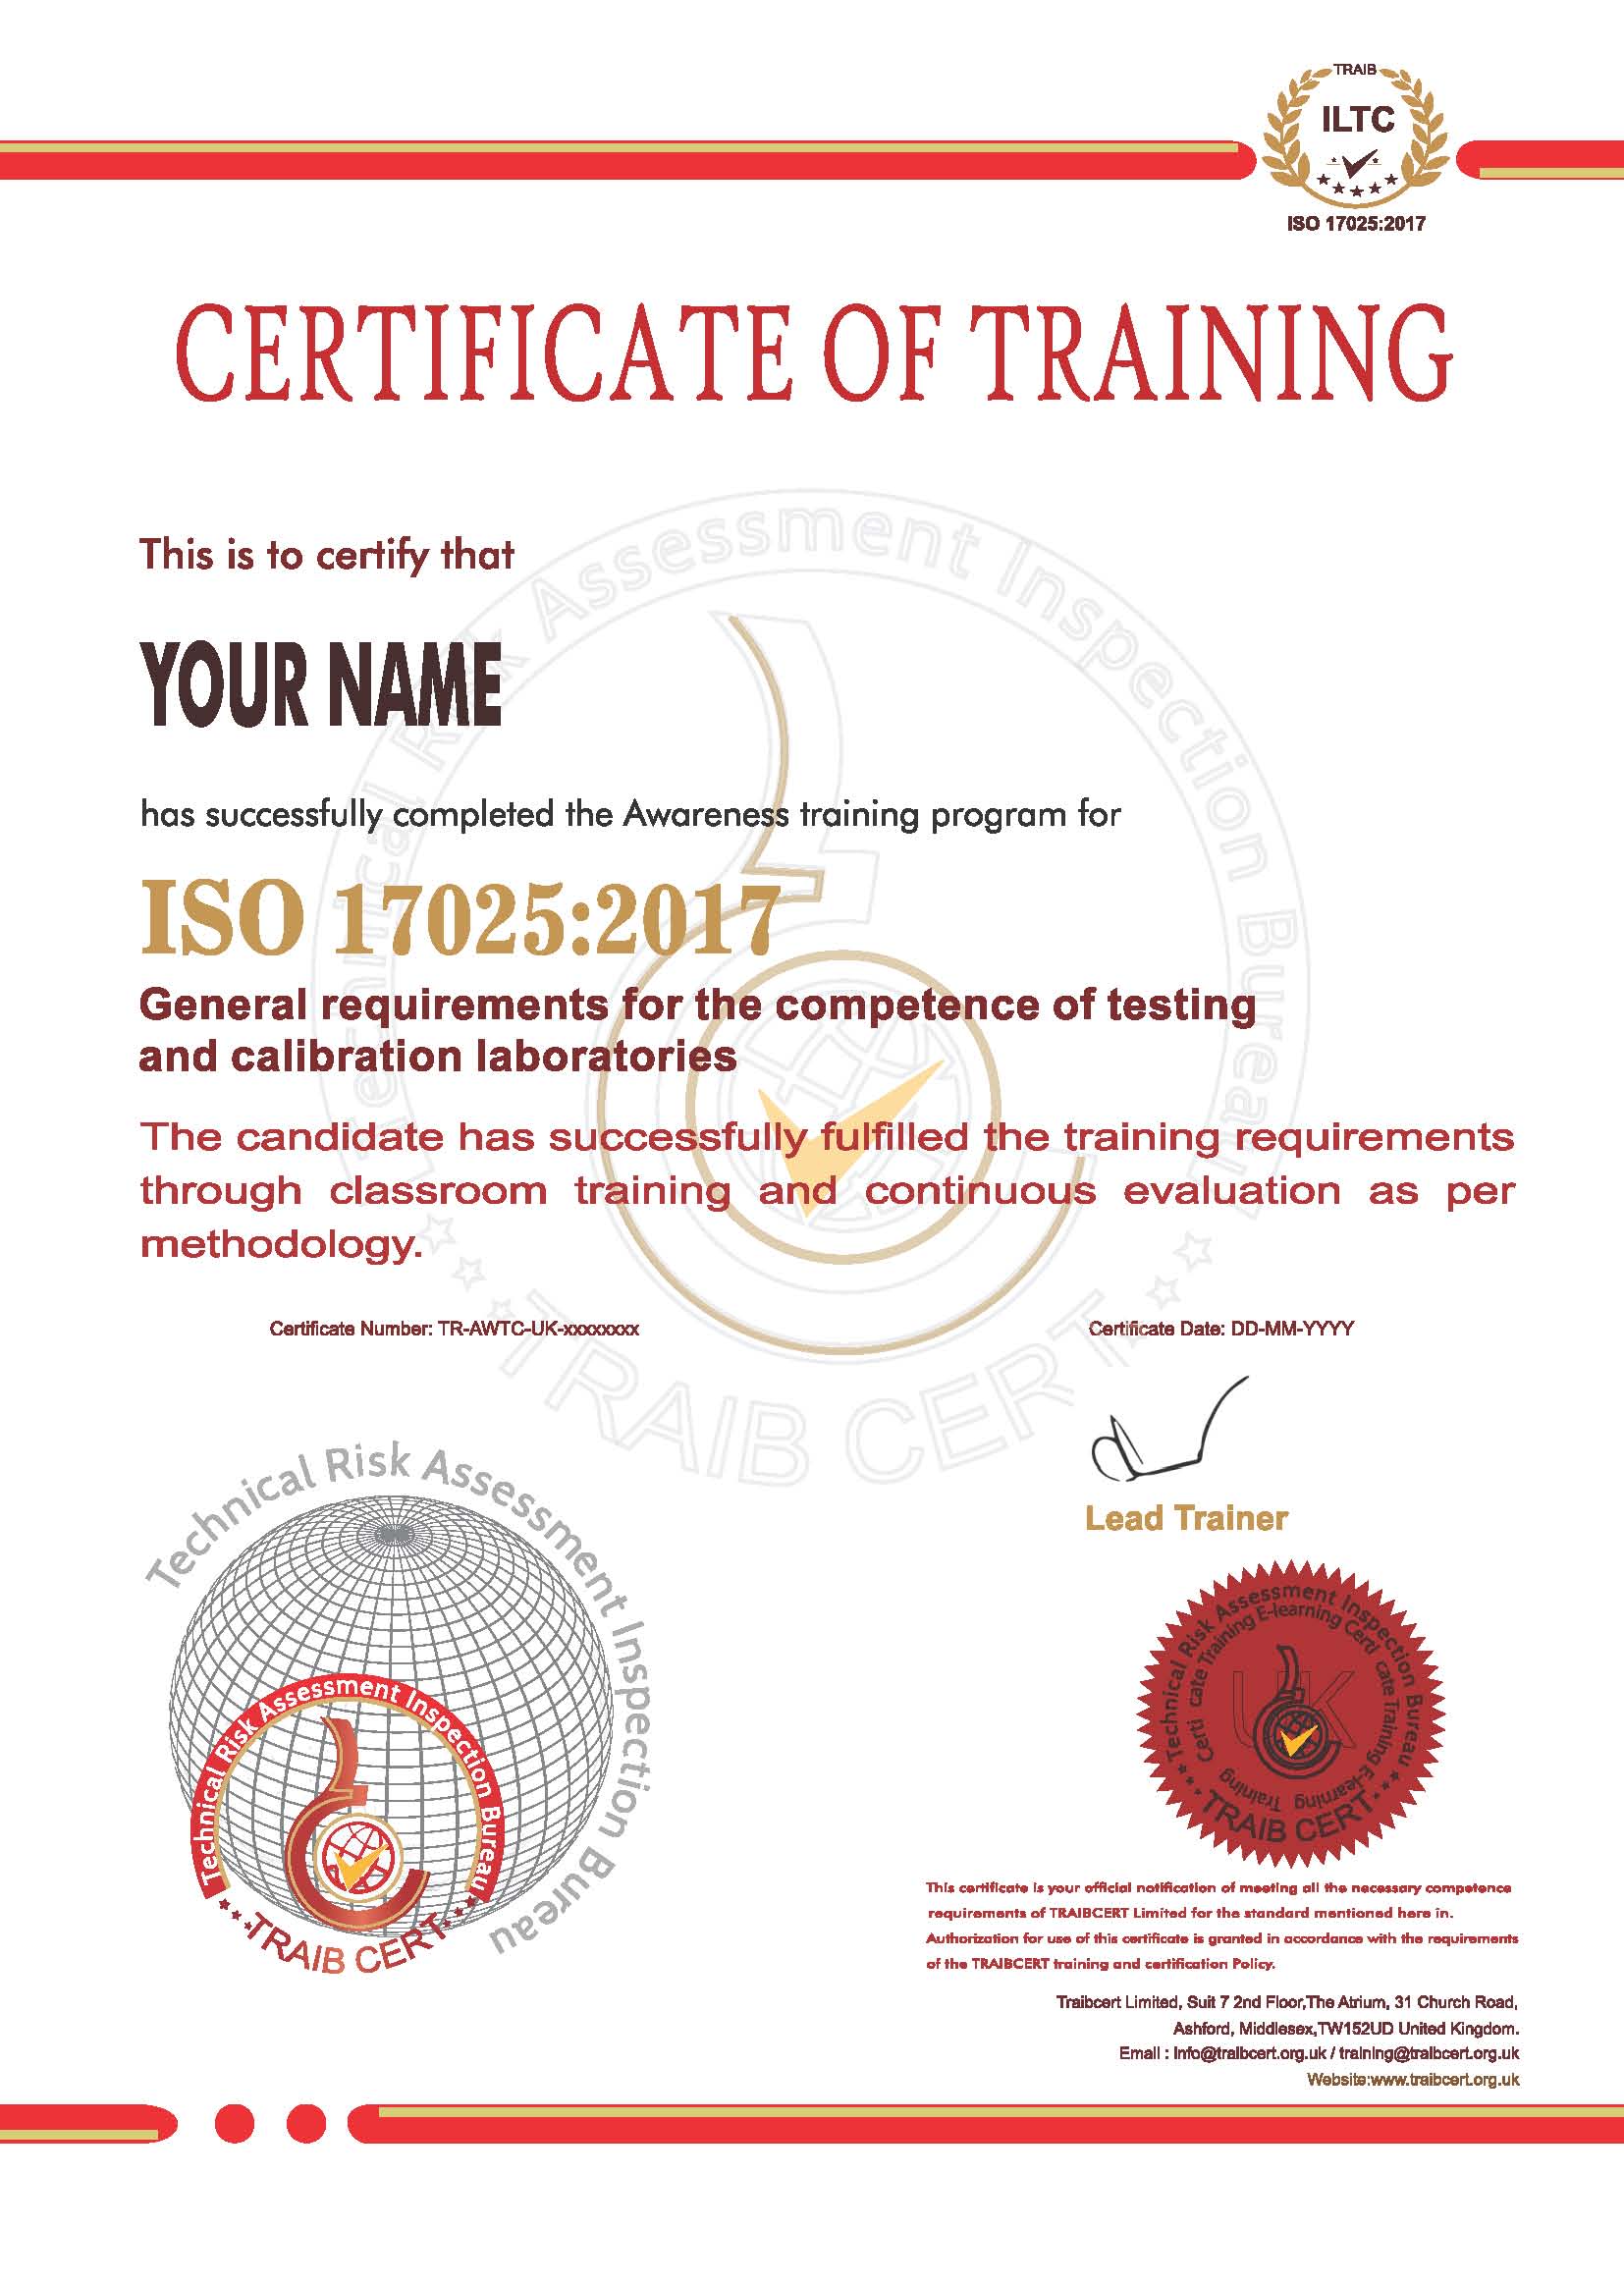 ISO-17025-2017-awareness-training